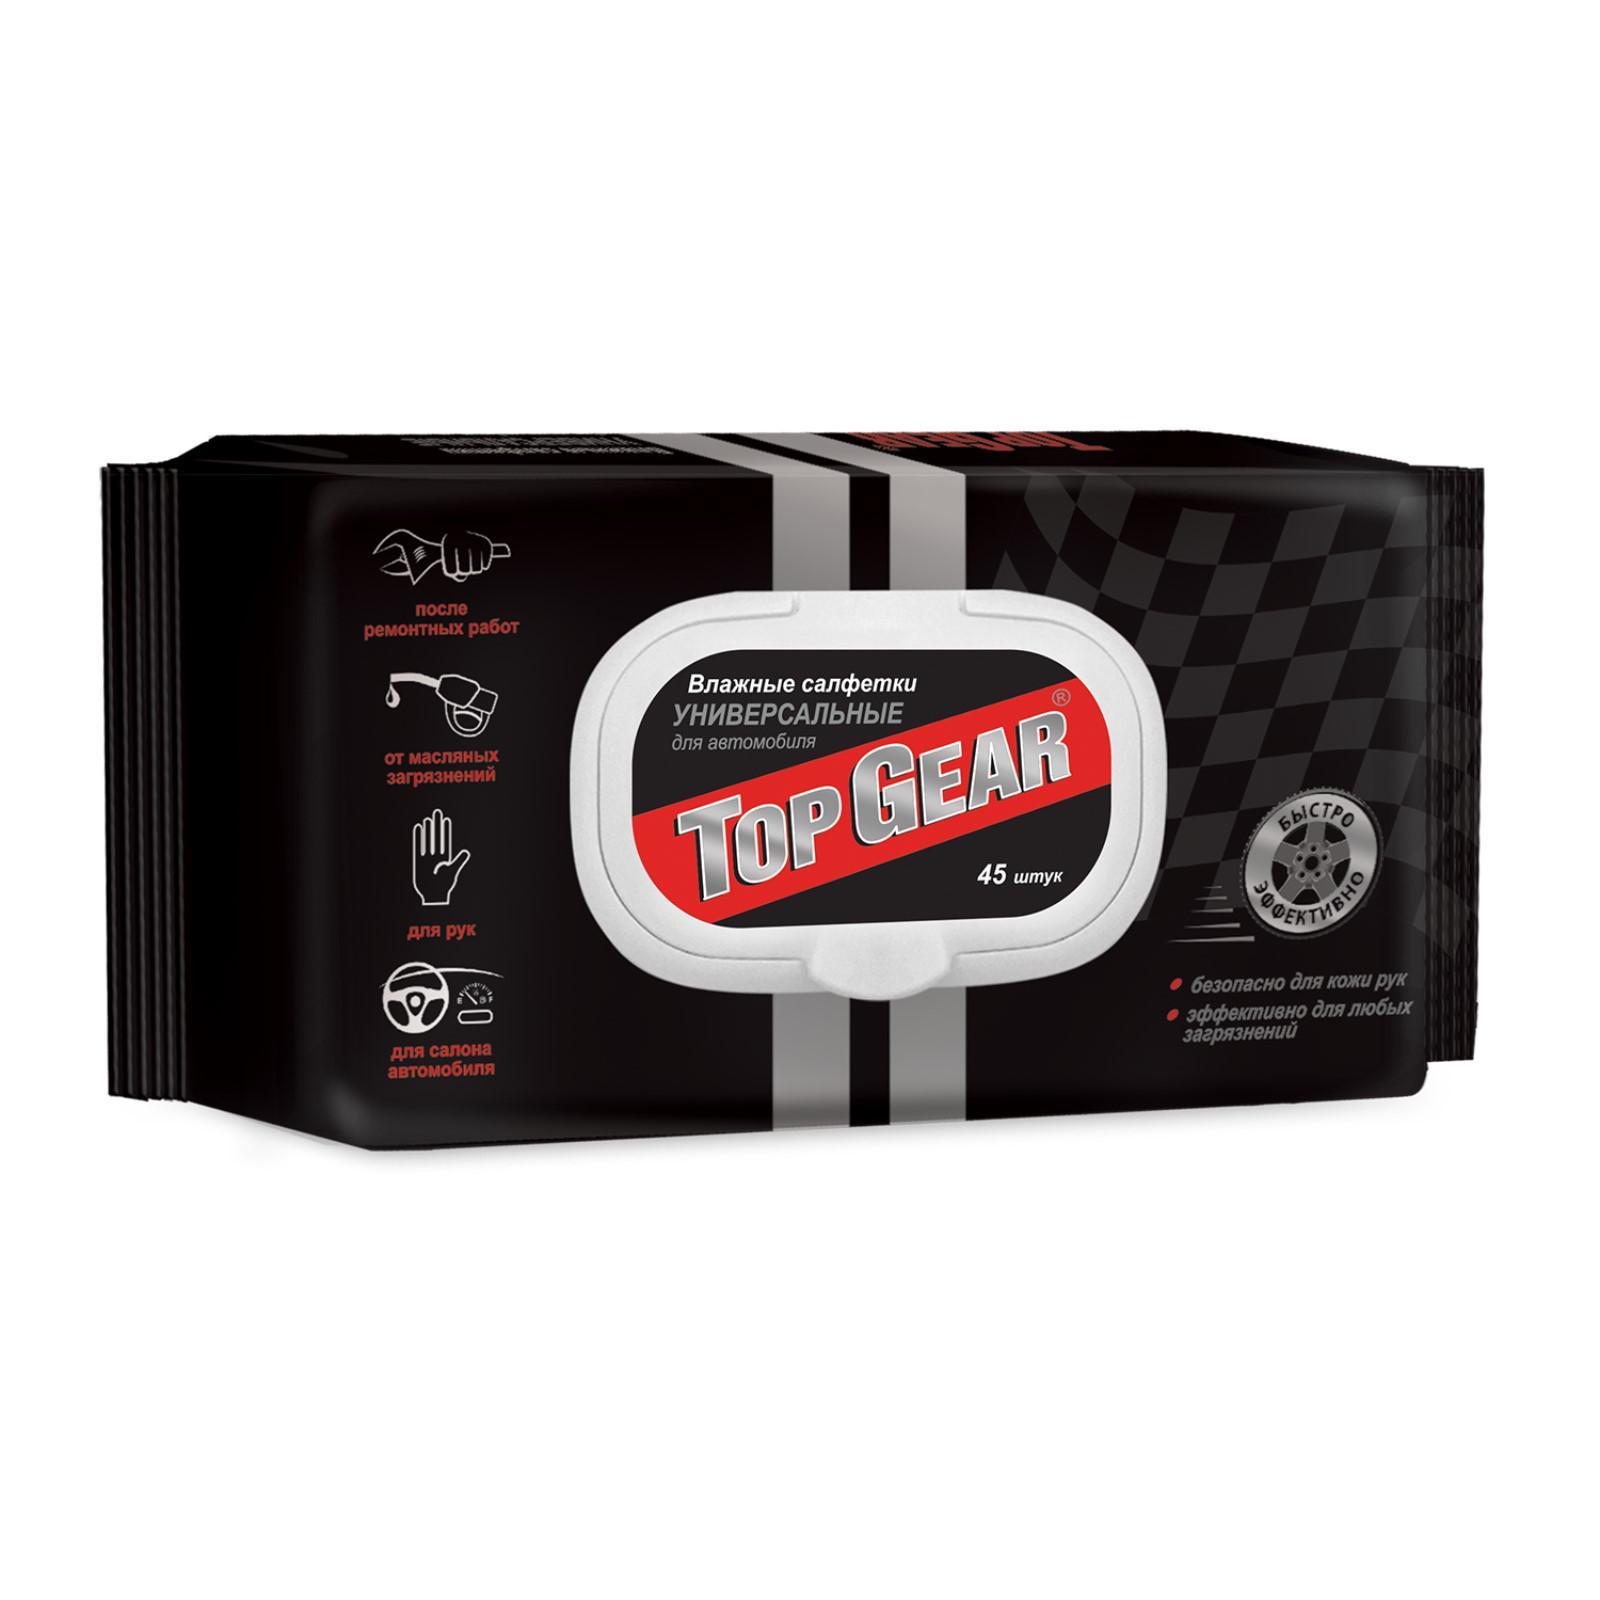 Top Gear влажные салфетки универсальные 45 шт.